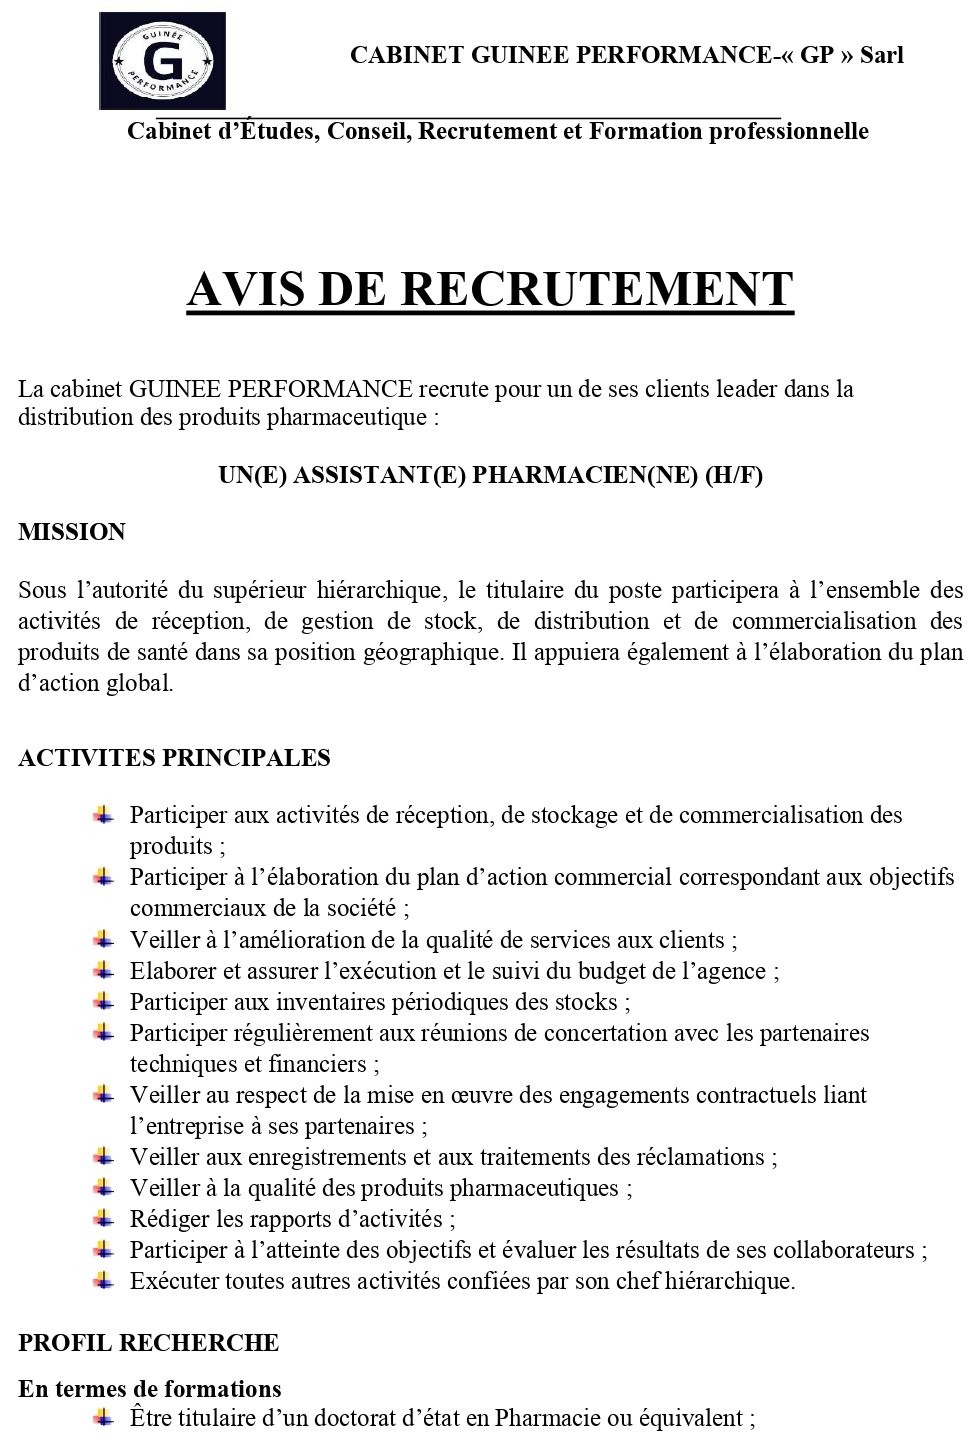 AVIS DE RECRUTEMENT D'UN(E) ASSISTANT(E) PHARMACIEN(NE) (H/F) | Page 1